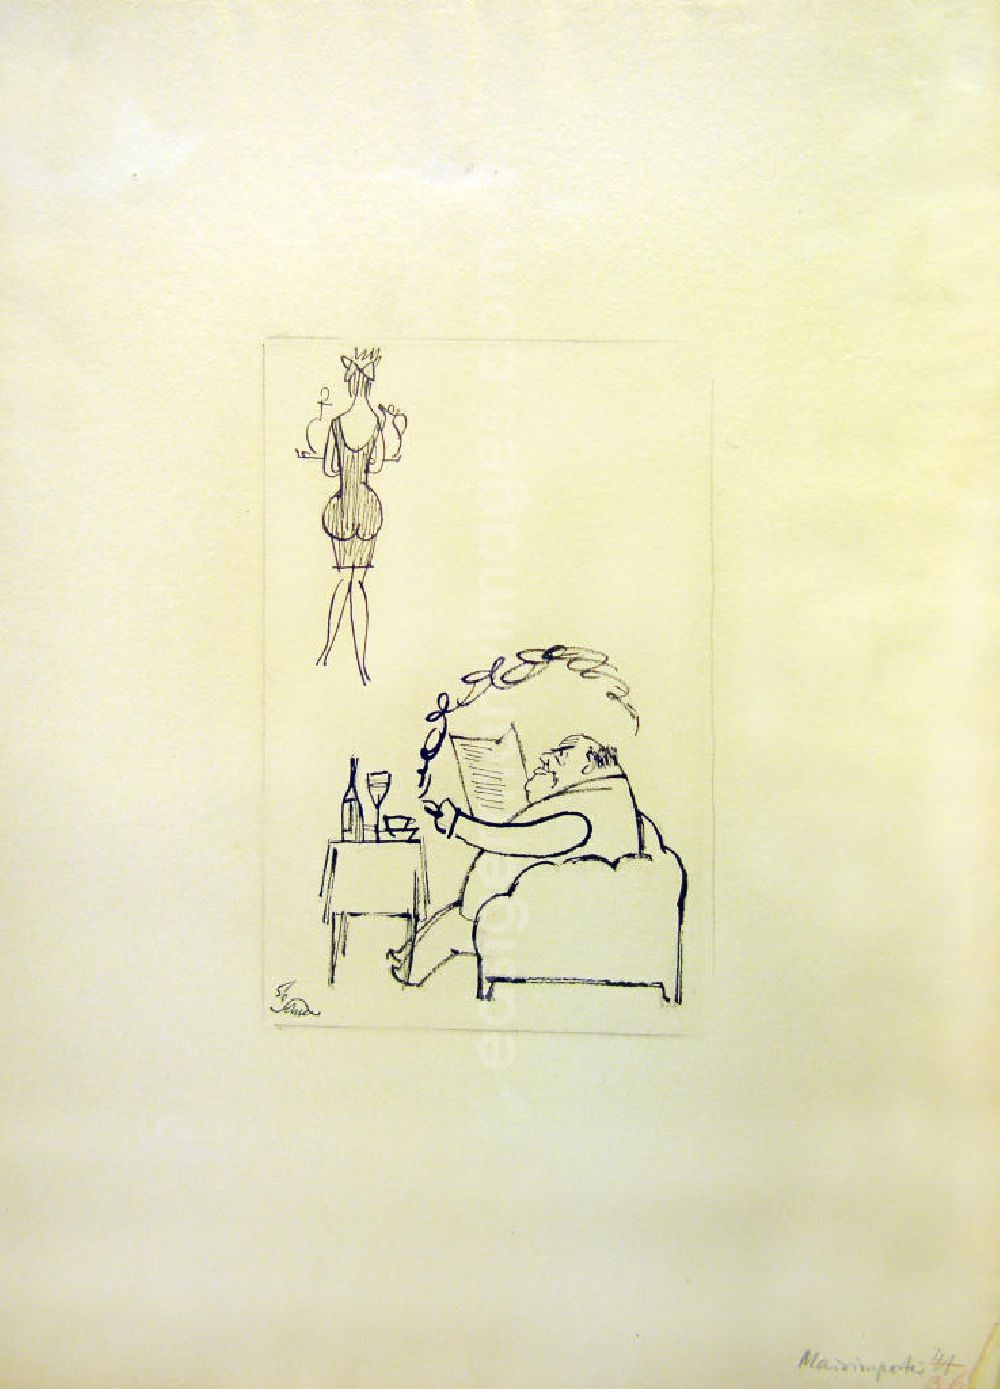 GDR photo archive: Berlin - Zeichnung von Herbert Sandberg Maidimporteur aus dem Jahr 1956, 13,3x2